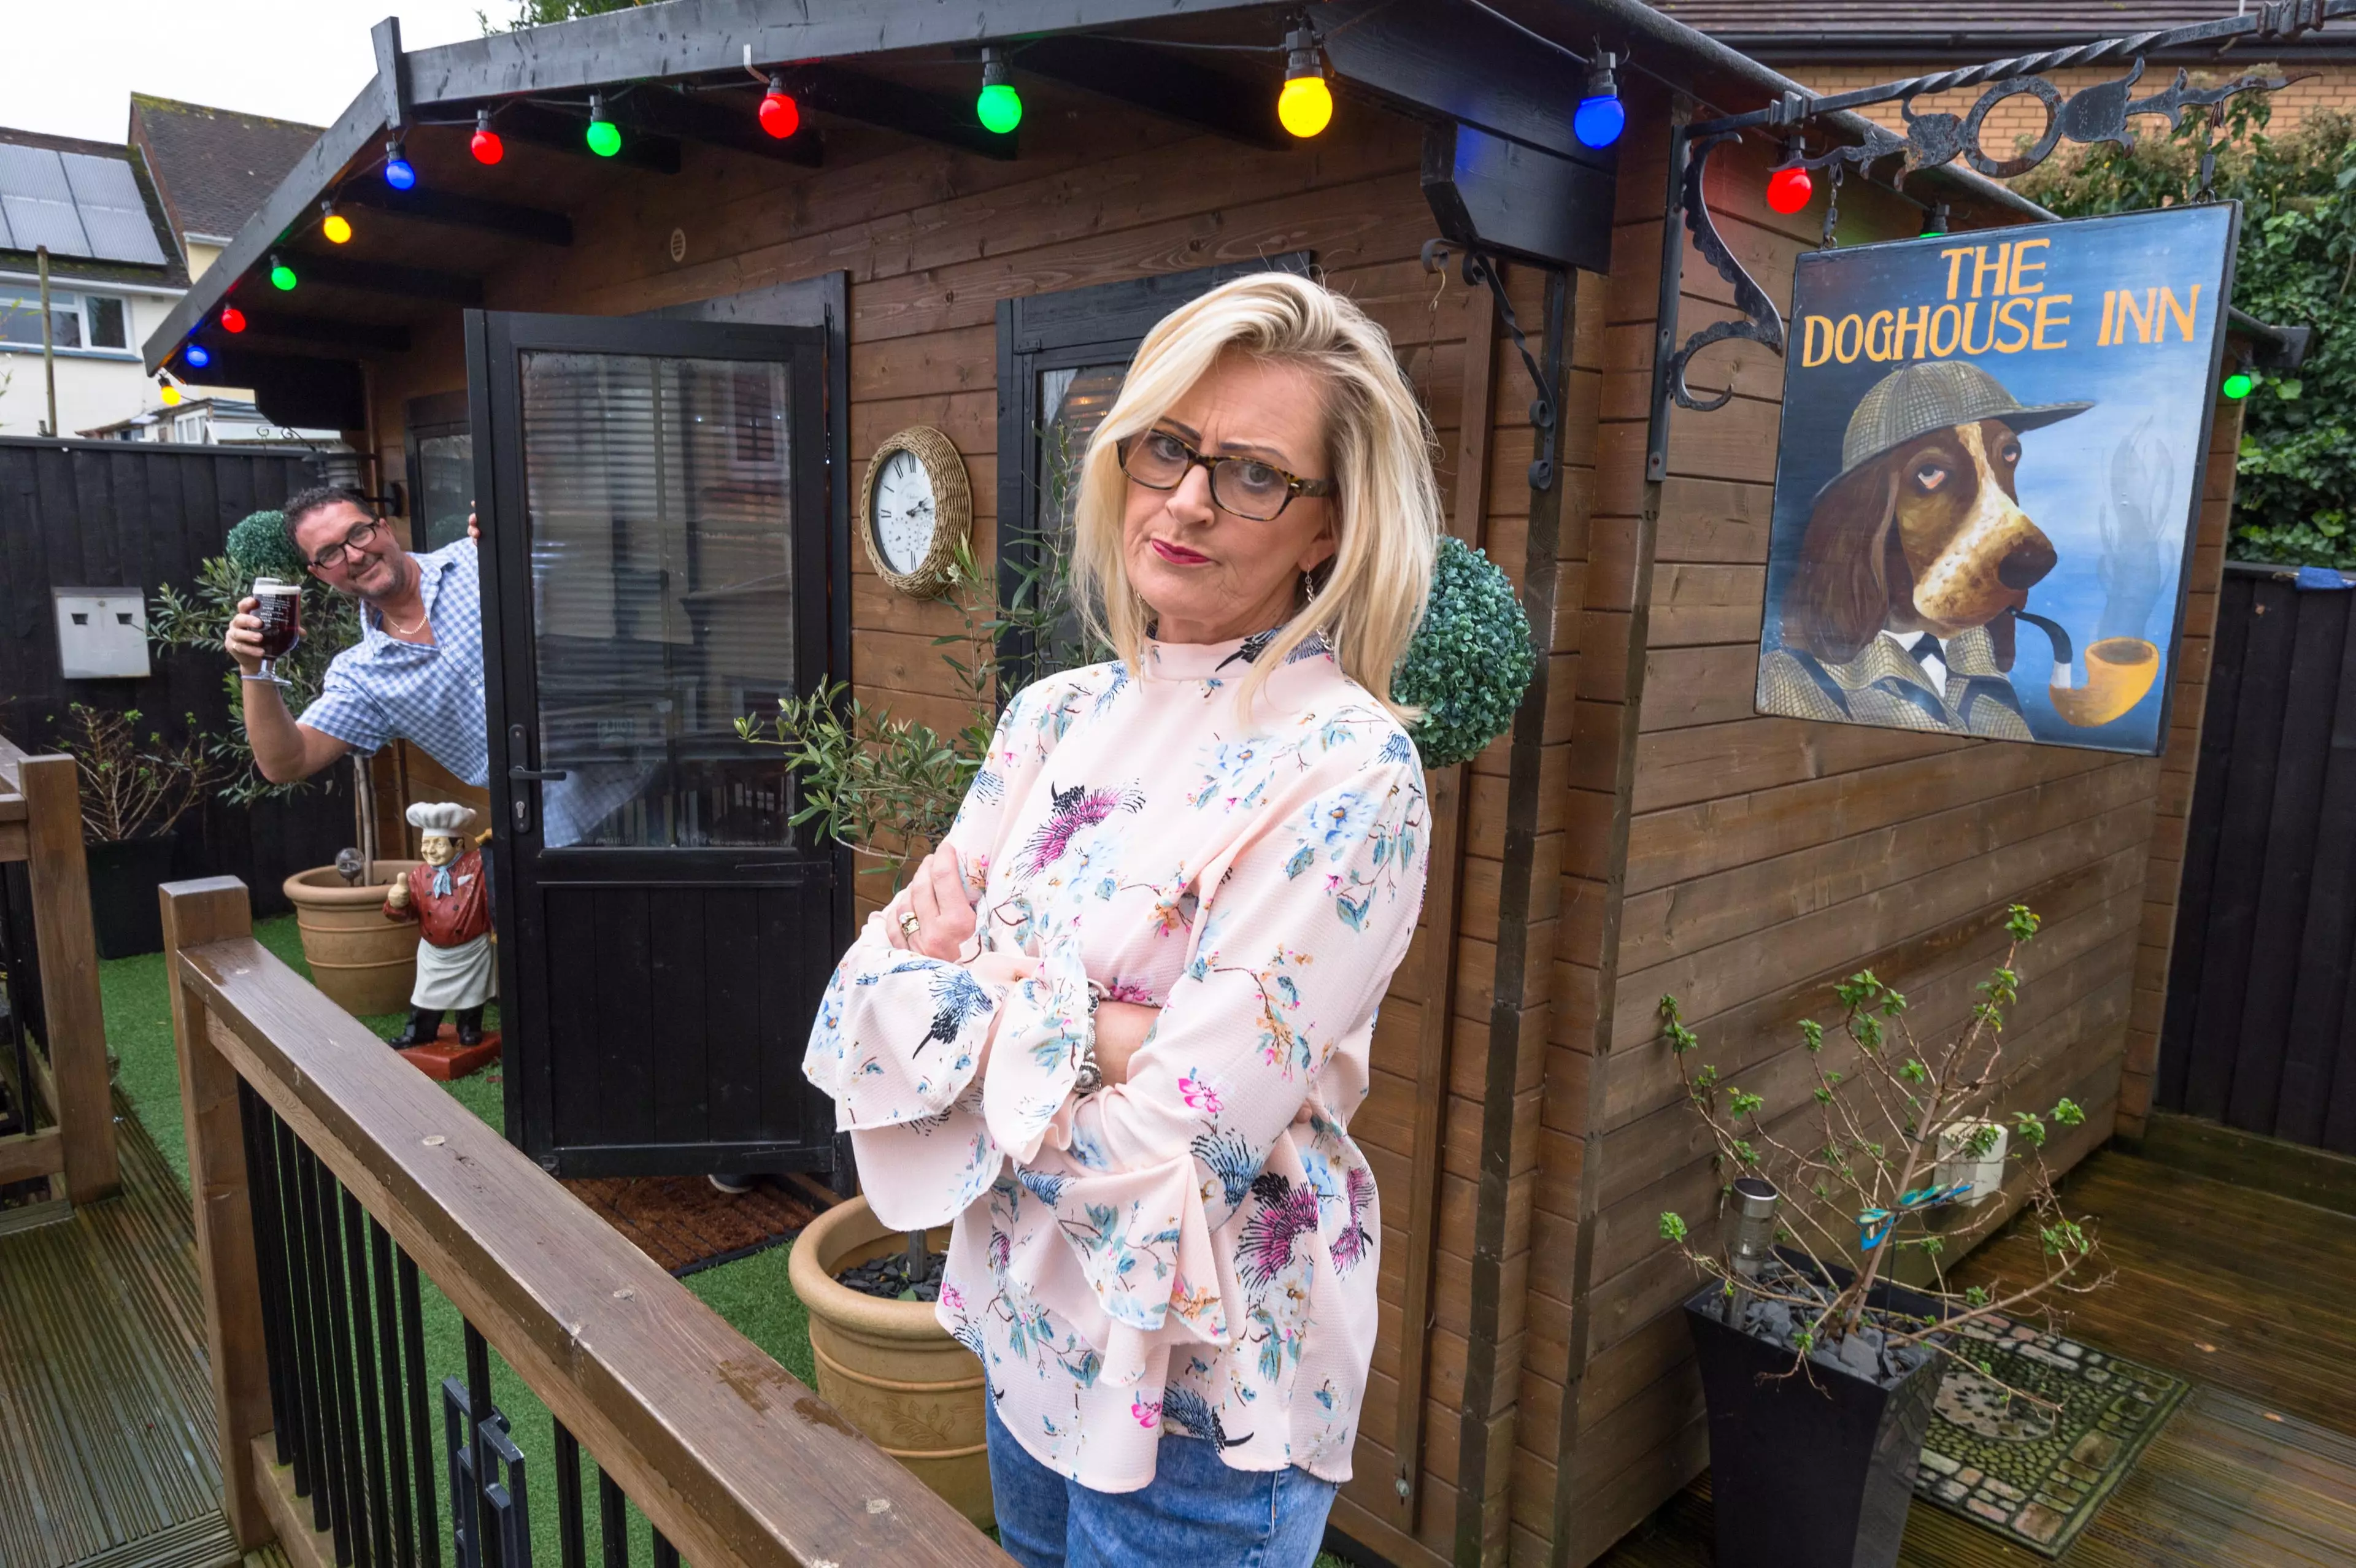 Jayne Tapper built her husband a pub in their garden named the Doghouse Inn (